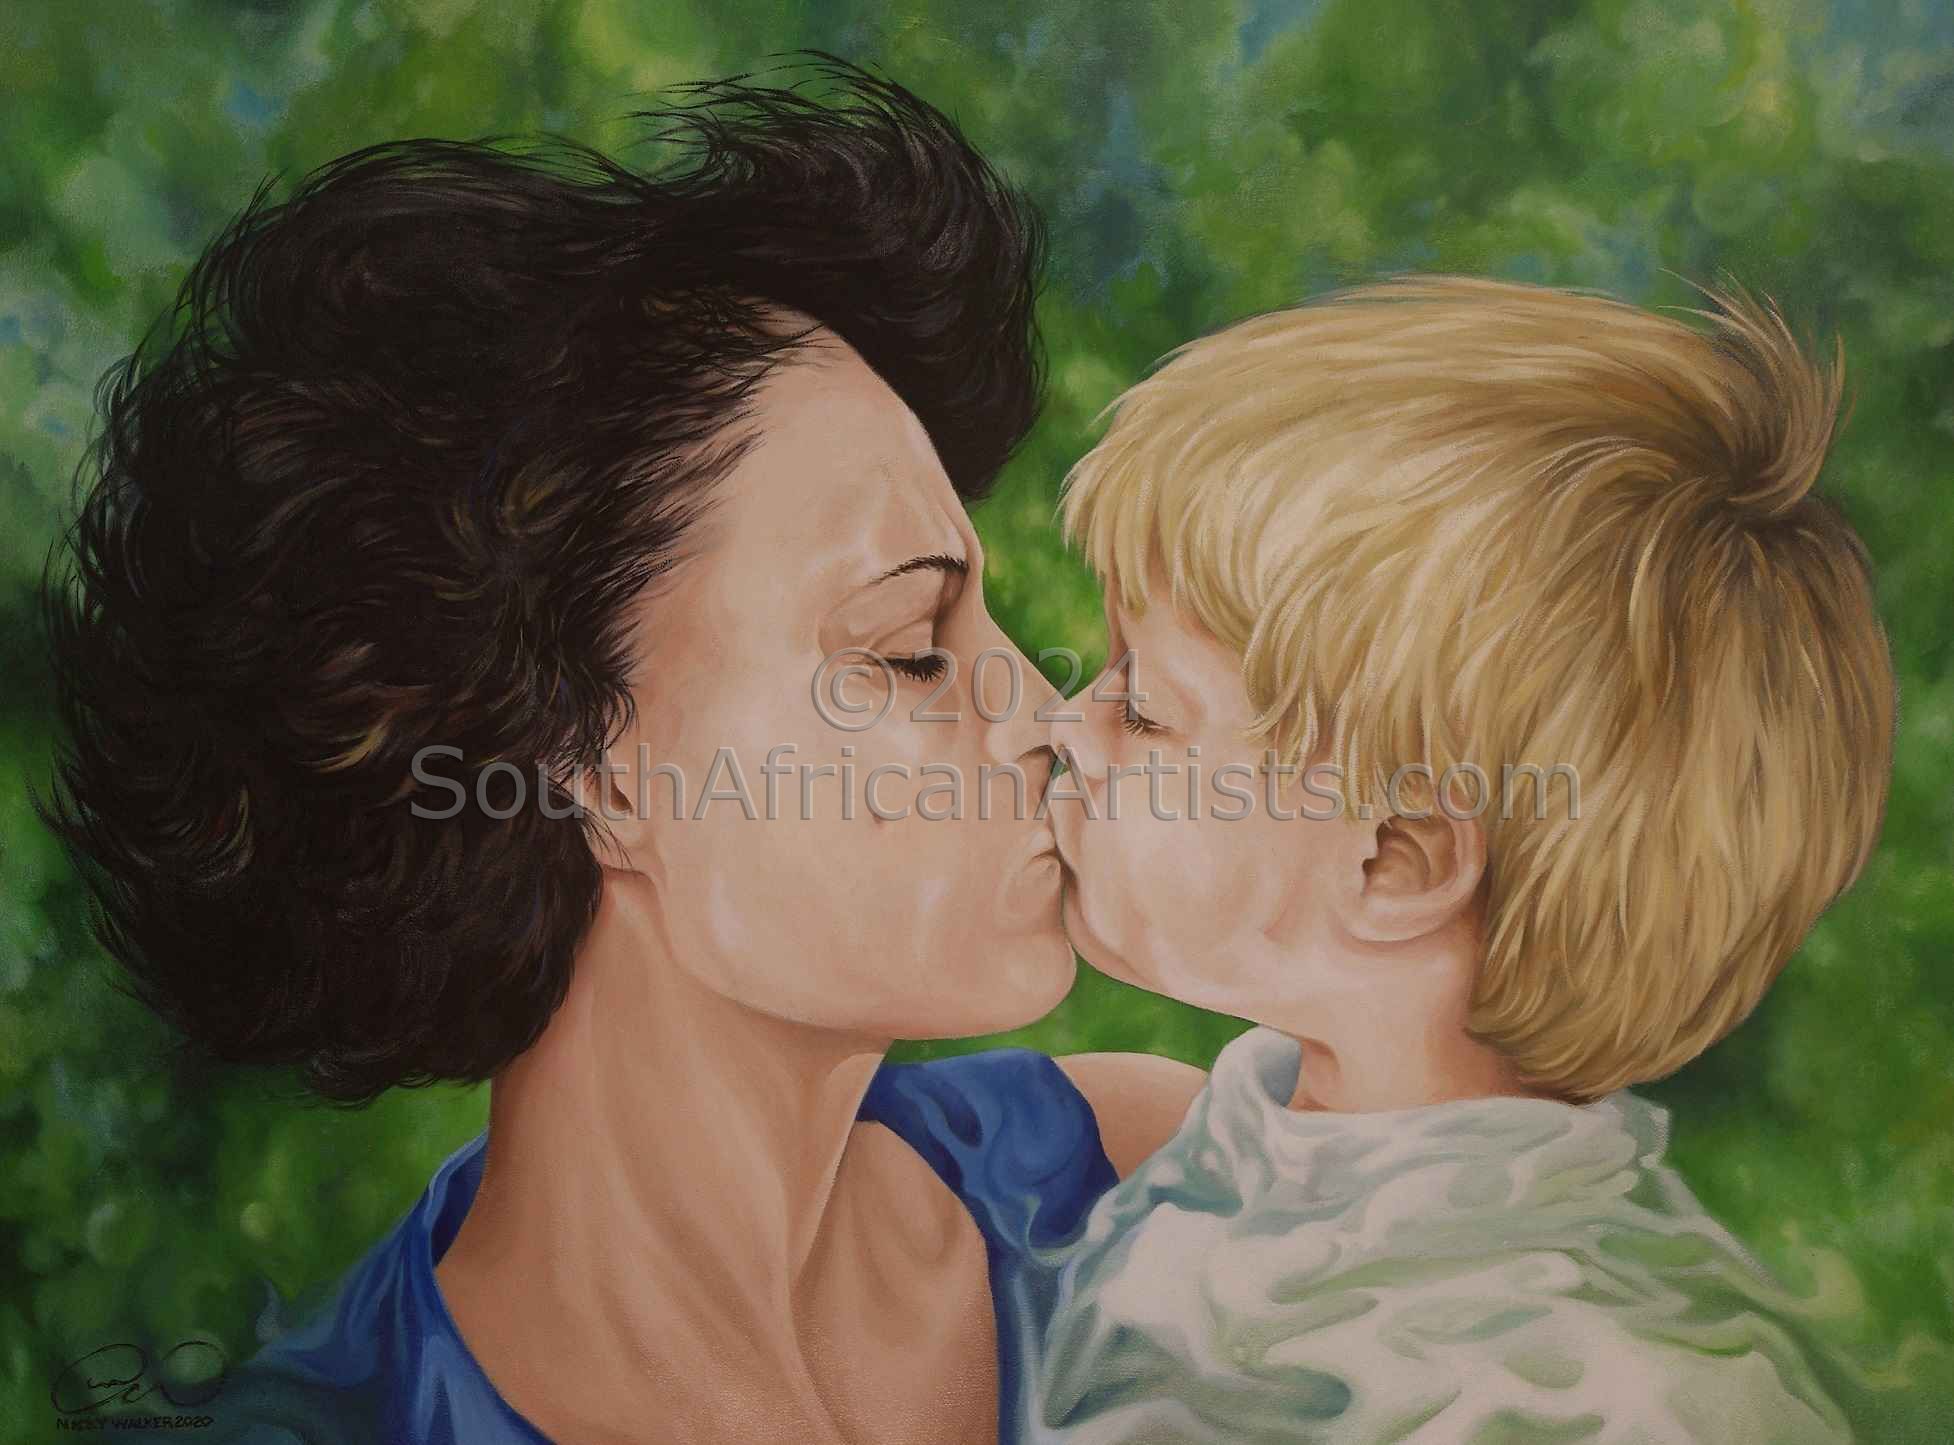 THE KISS Maria and Son Nicholas